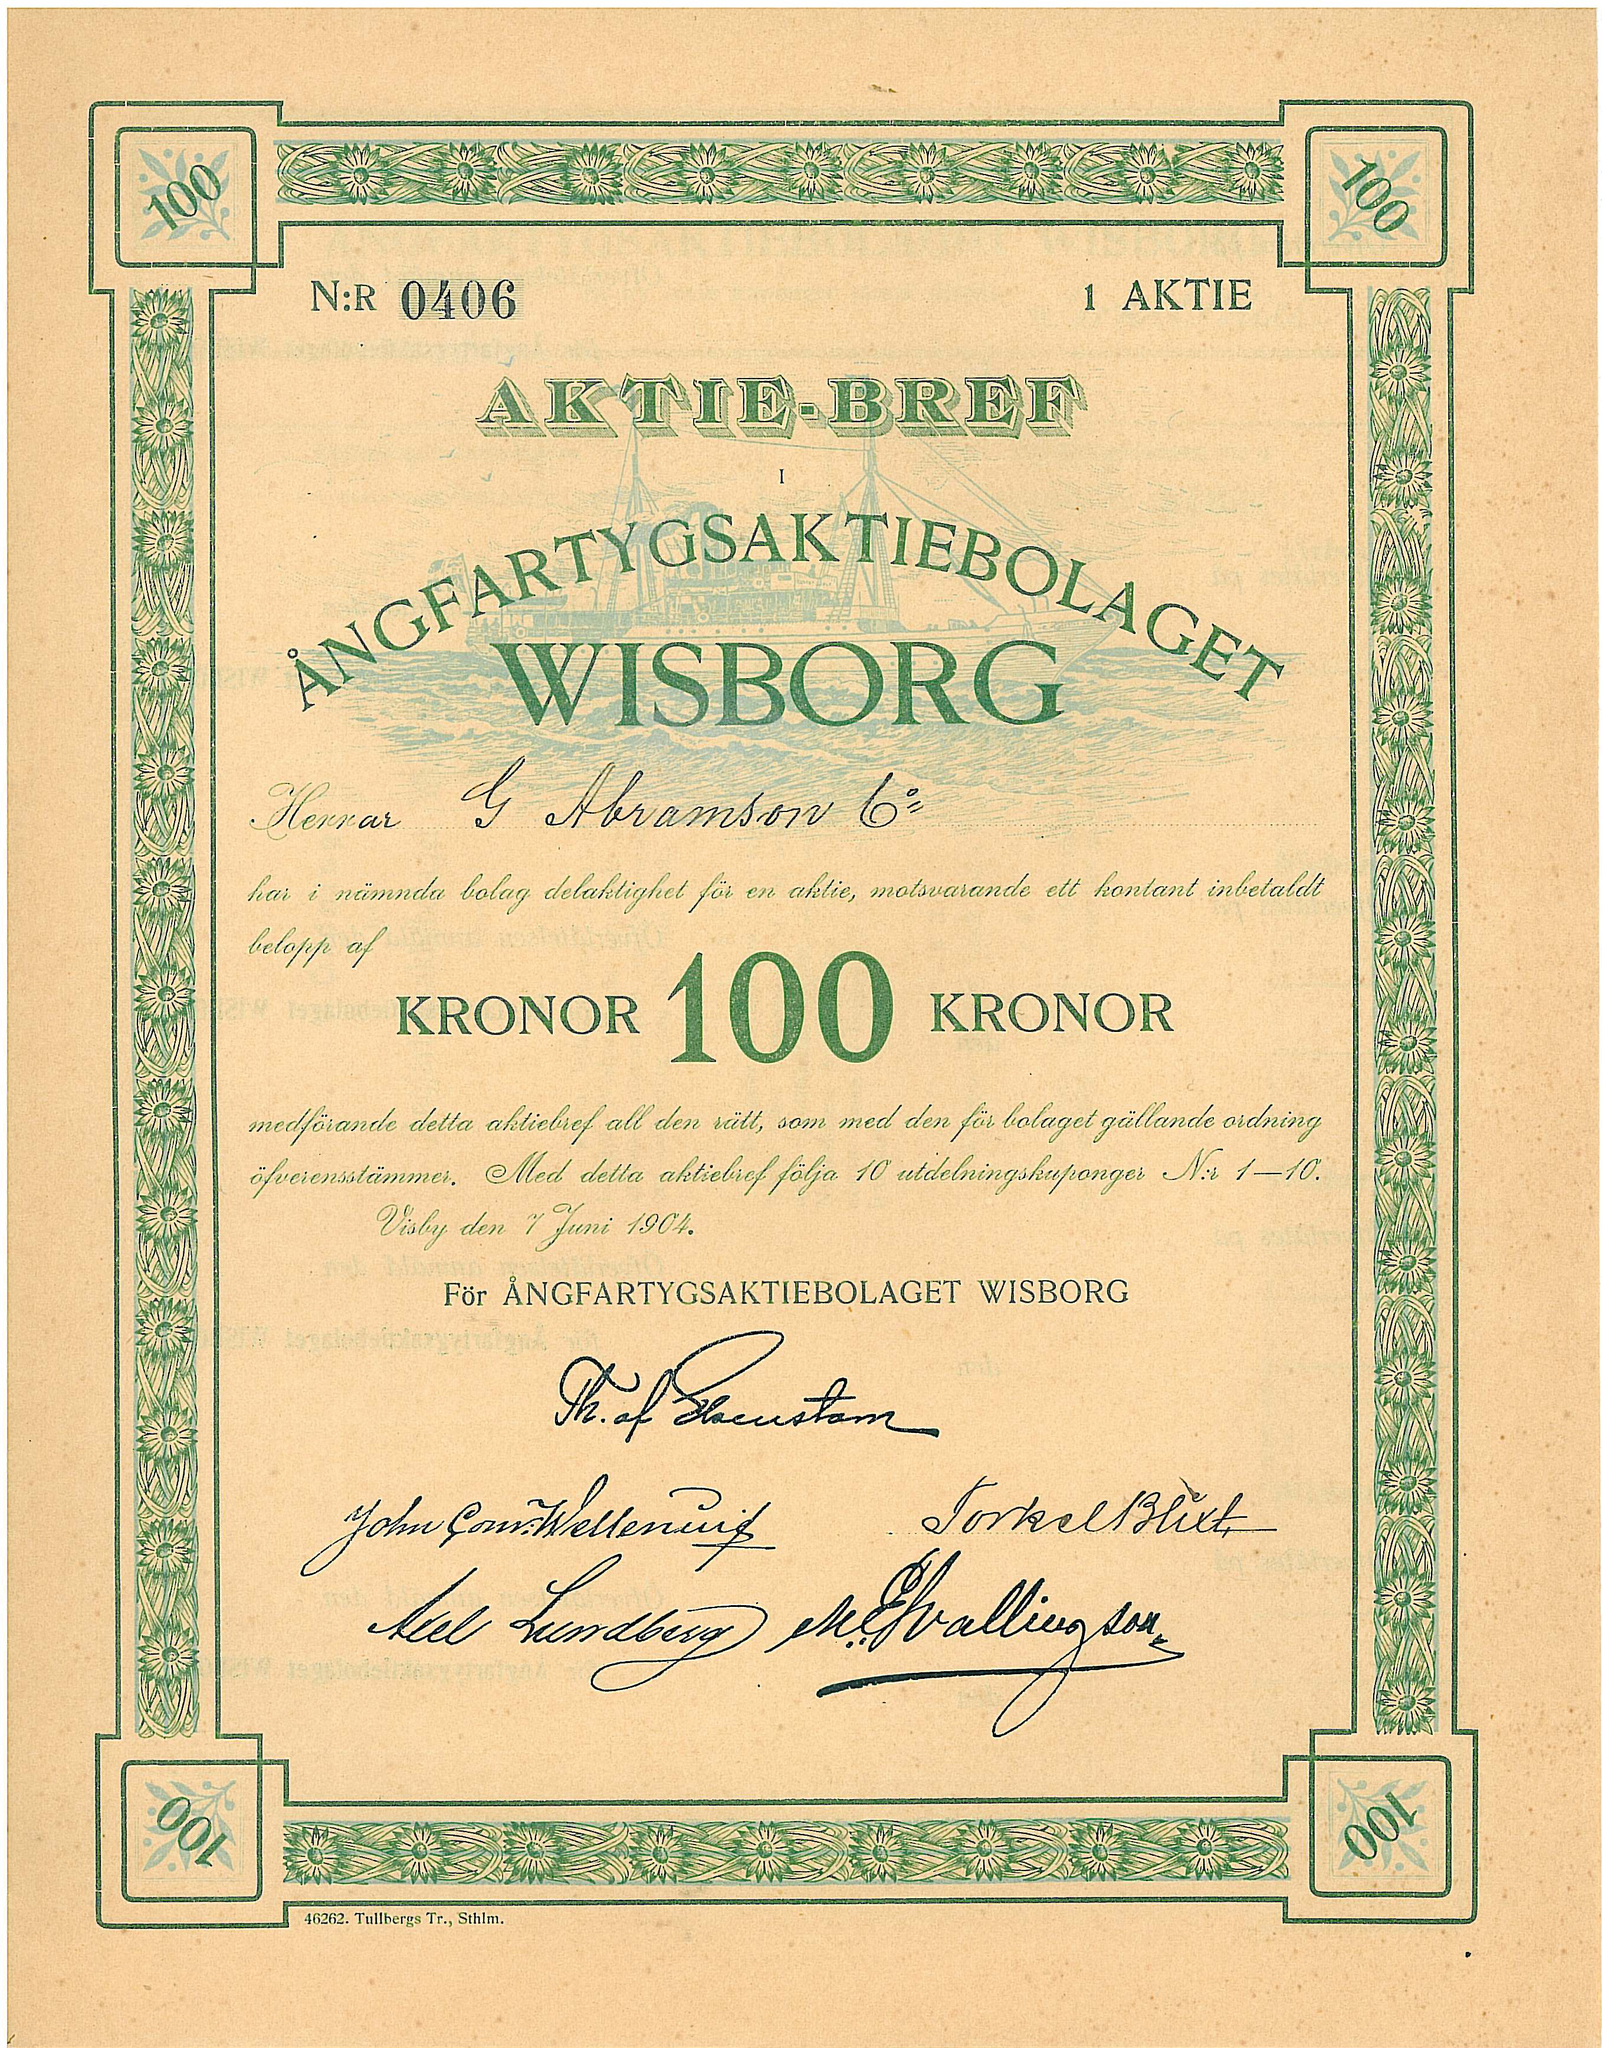 Ångfartygs AB Wisborg